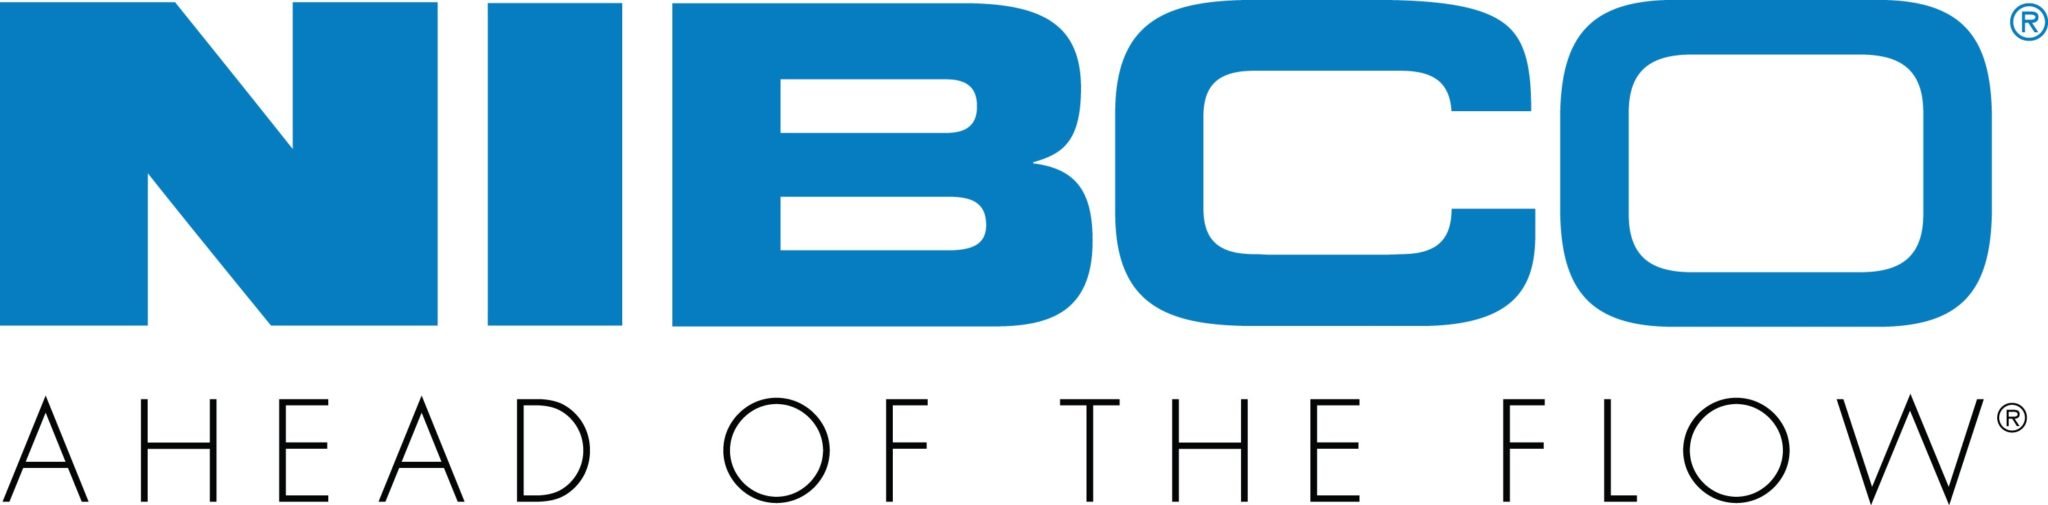 NIBCO-logo-2019-scaled.jpeg